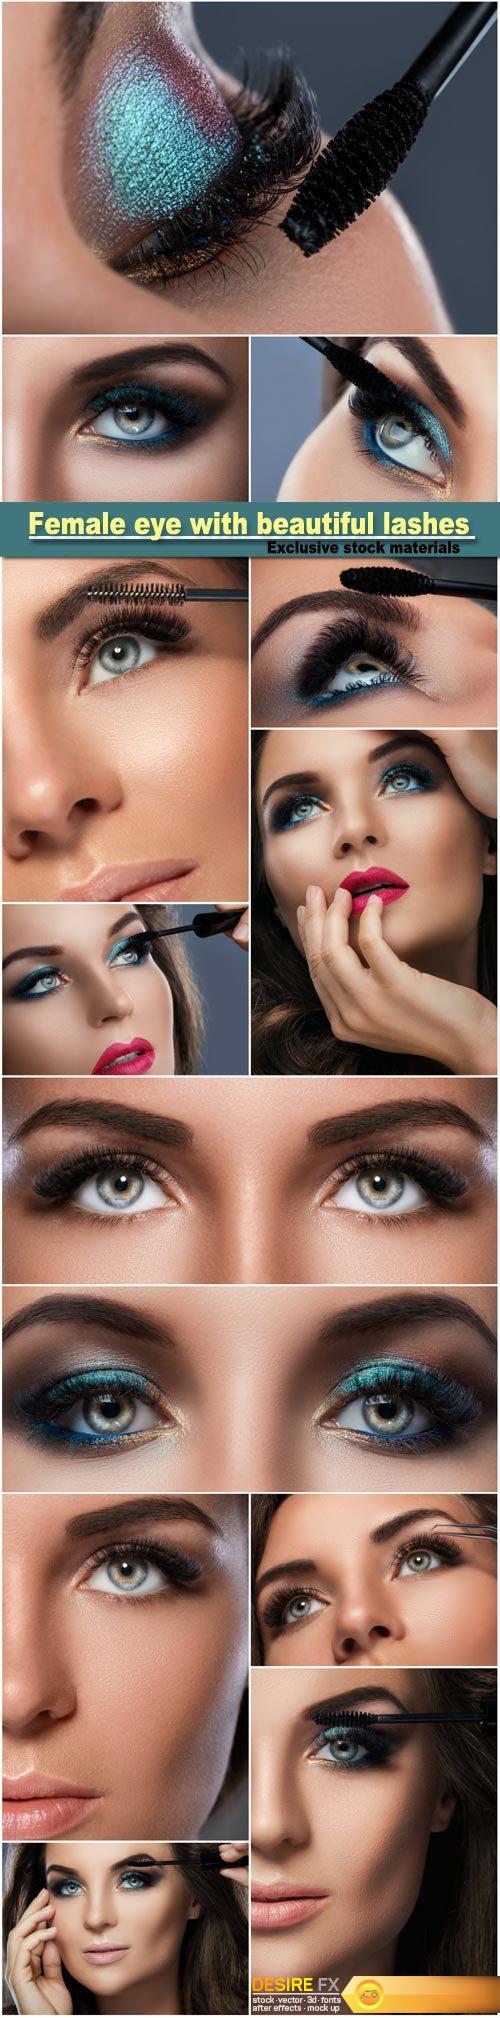 Female eye with beautiful long lashes, make-up